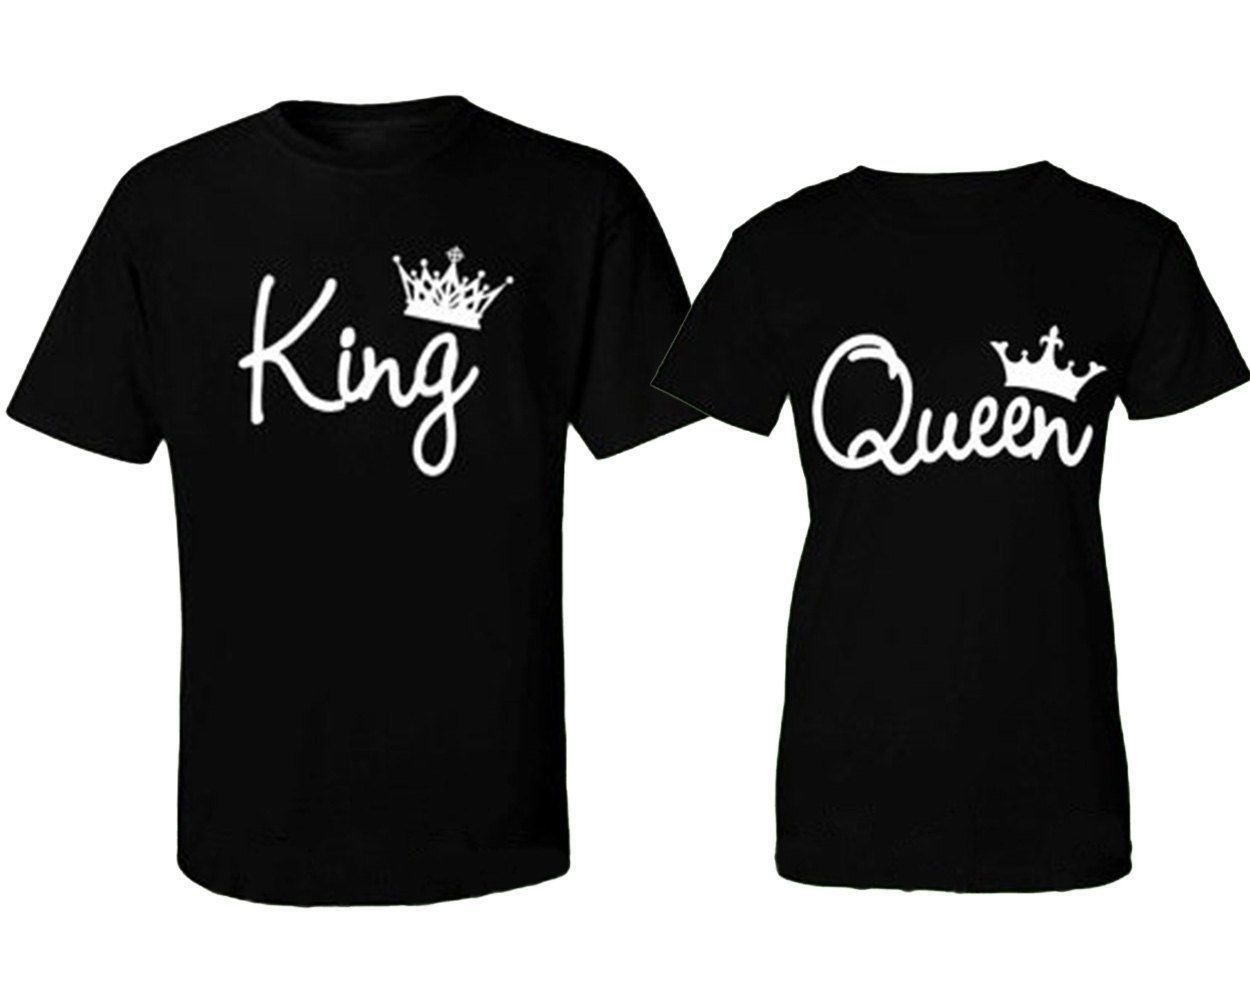 King Queen - Black Tshirt